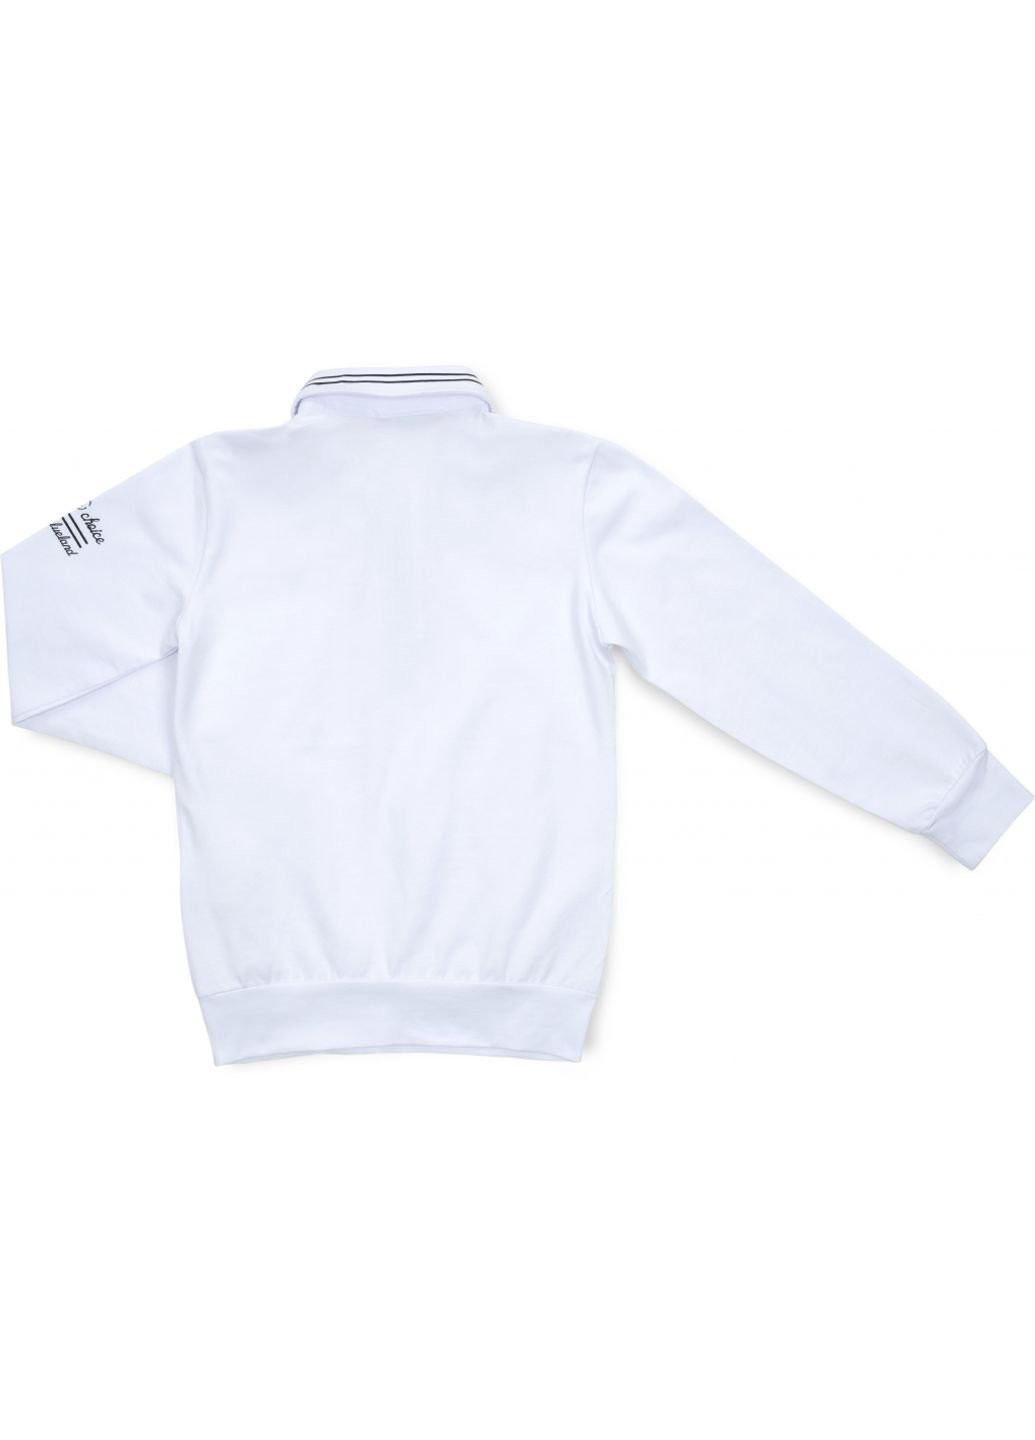 Біла демісезонна футболка дитяча поло з довгим рукавом (10783-128b-white) BLUELAND